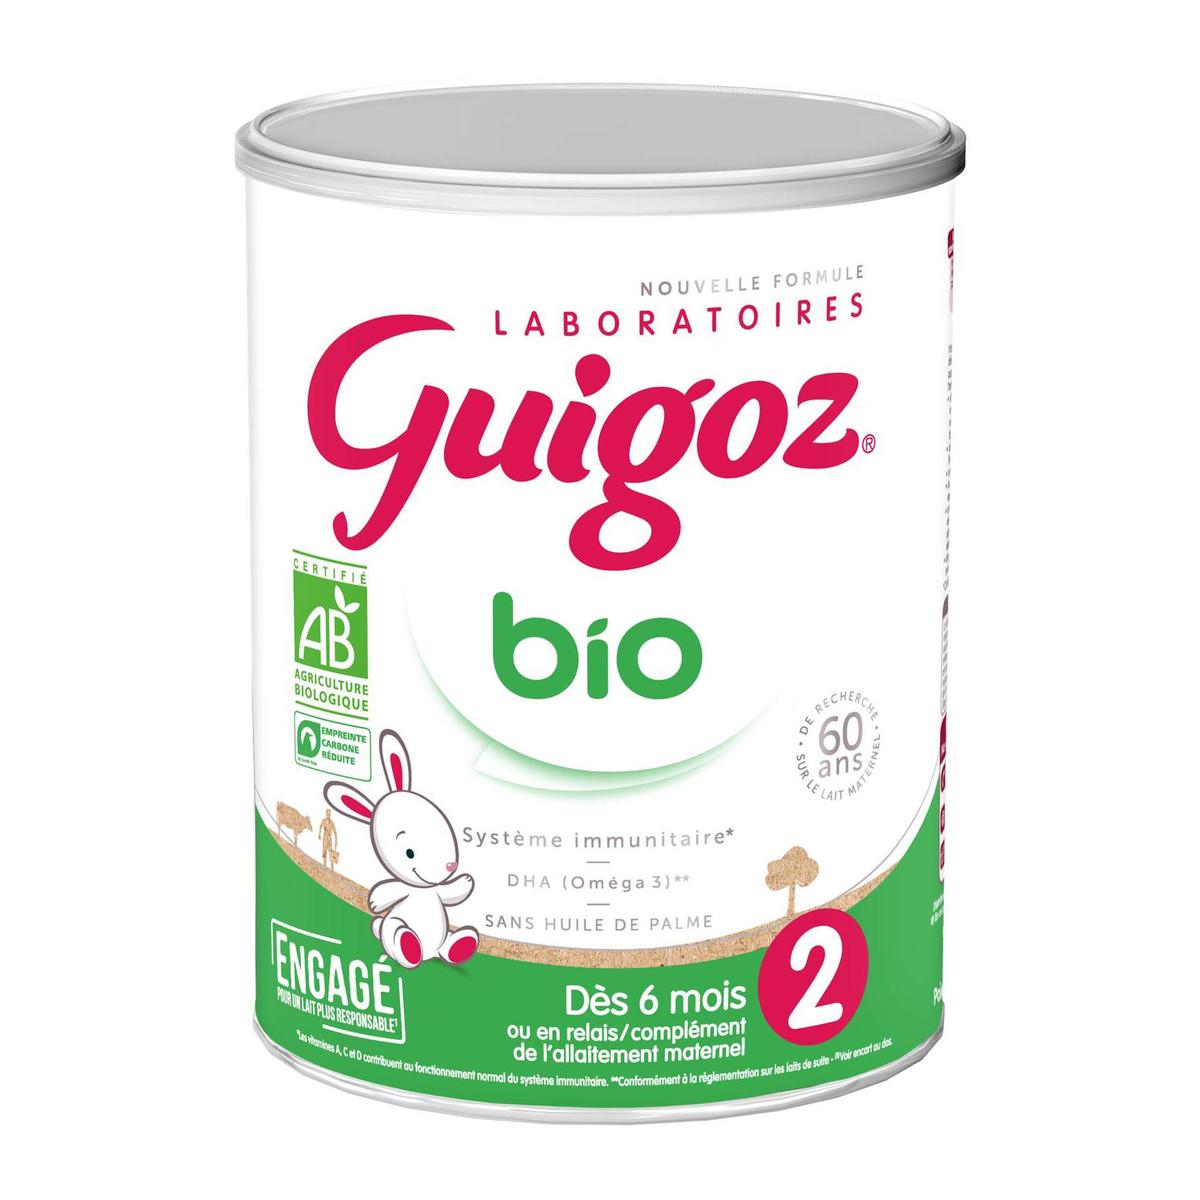 Guigoz Optipro 2 Liquide